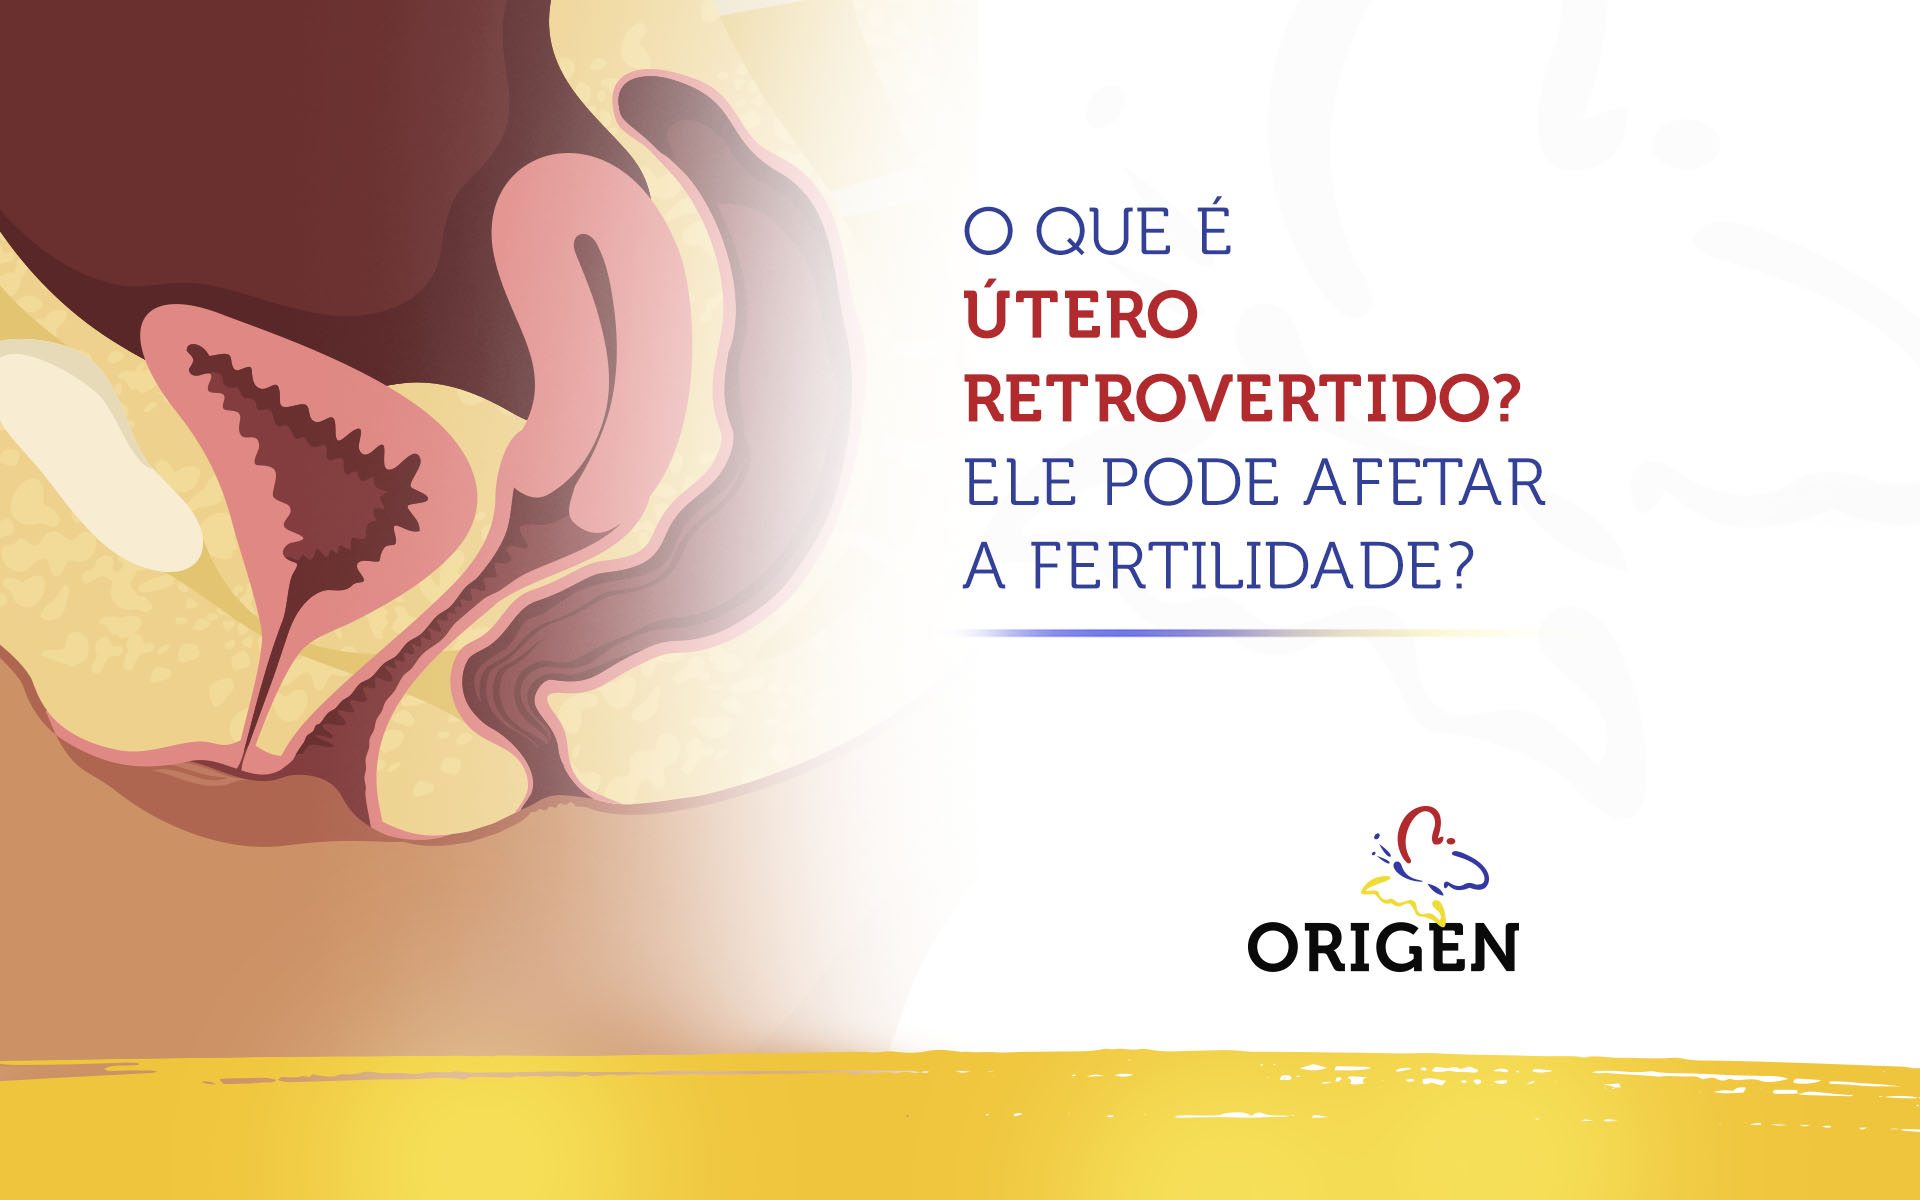 O que é útero retrovertido? Ele pode afetar a fertilidade?